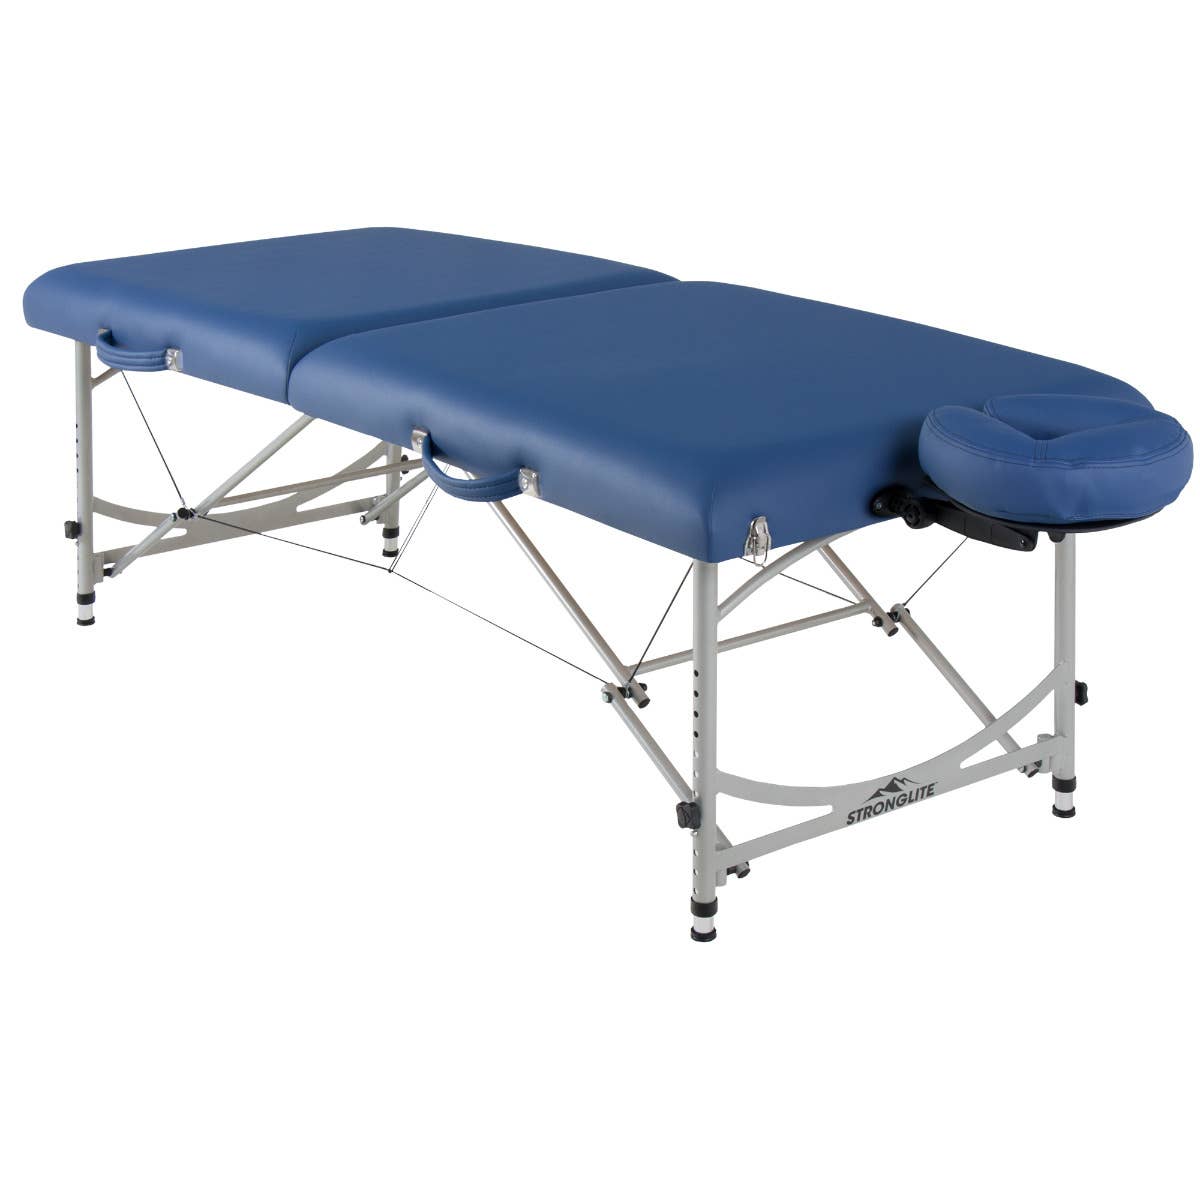 StrongLite Versalite Pro Aluminum Massage Table Package - SLPVRPRO